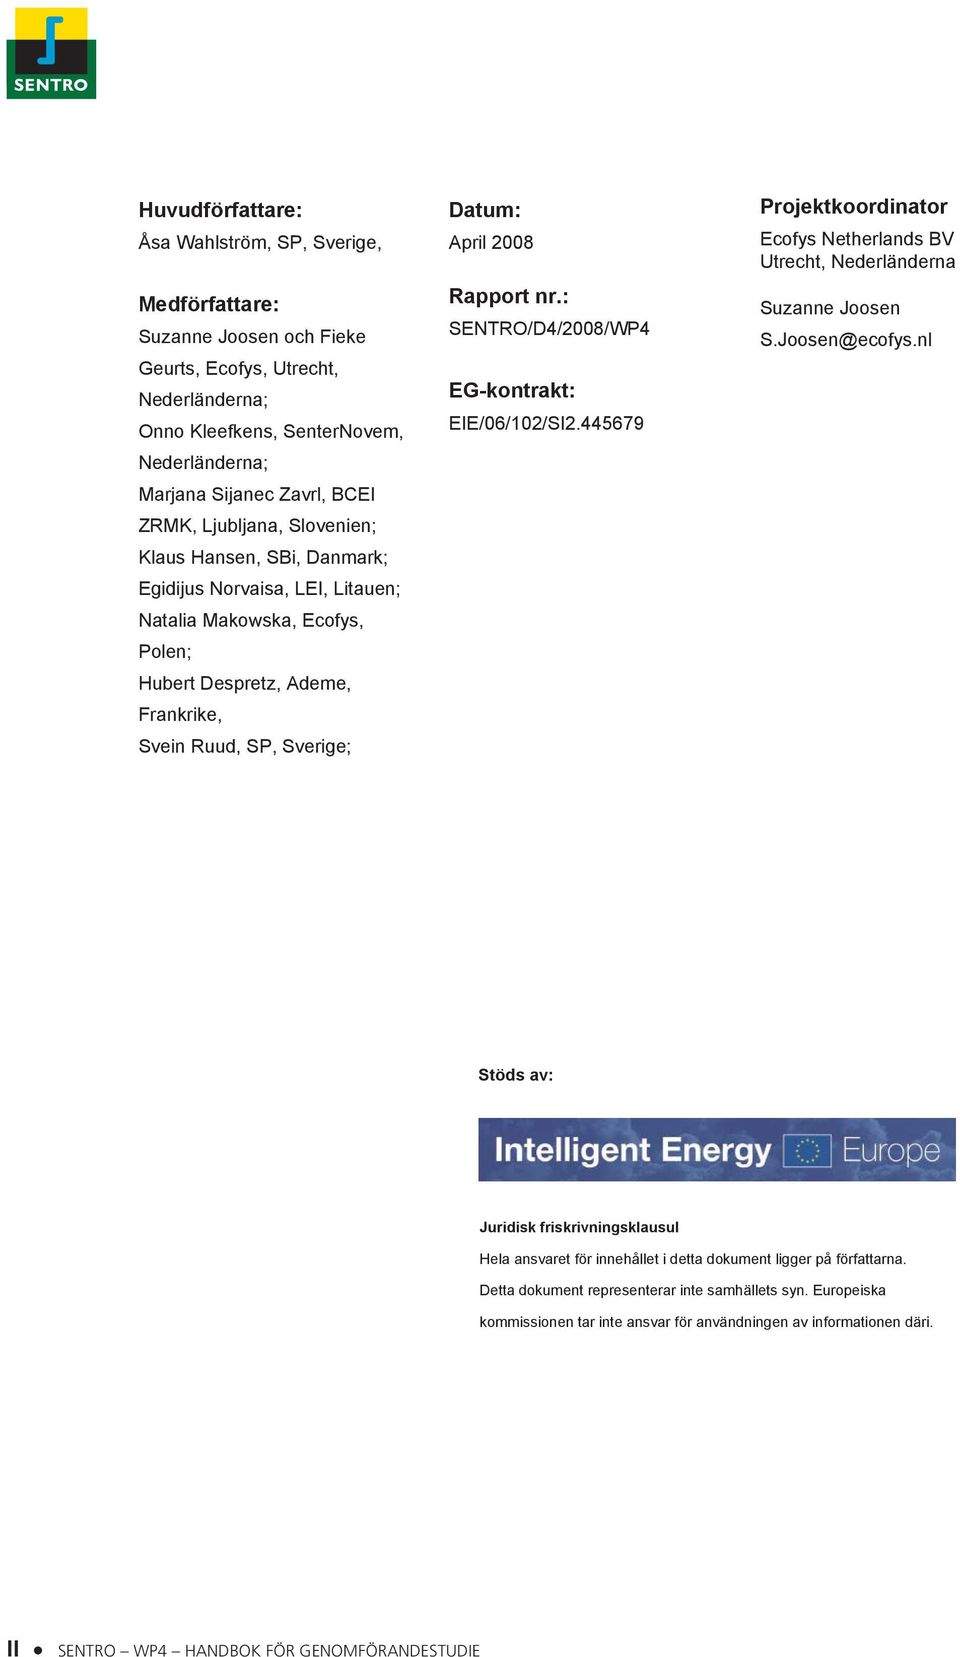 Rapport nr.: SENTRO/D4/2008/WP4 EG-kontrakt: EIE/06/102/SI2.445679 Projektkoordinator Ecofys Netherlands BV Utrecht, Nederländerna Suzanne Joosen S.Joosen@ecofys.